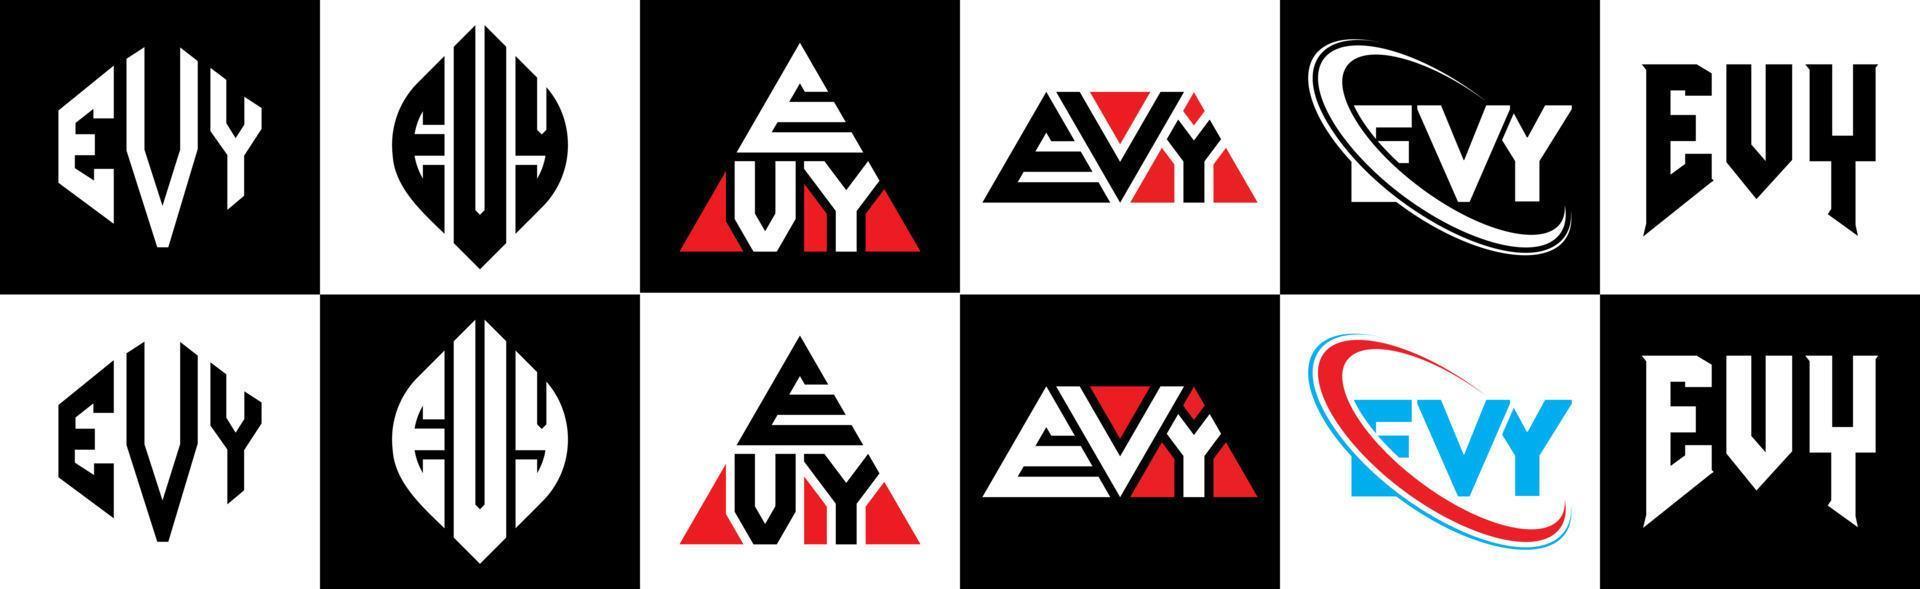 création de logo de lettre evy en six styles. evy polygone, cercle, triangle, hexagone, style plat et simple avec logo de lettre de variation de couleur noir et blanc dans un plan de travail. logo minimaliste et classique evy vecteur